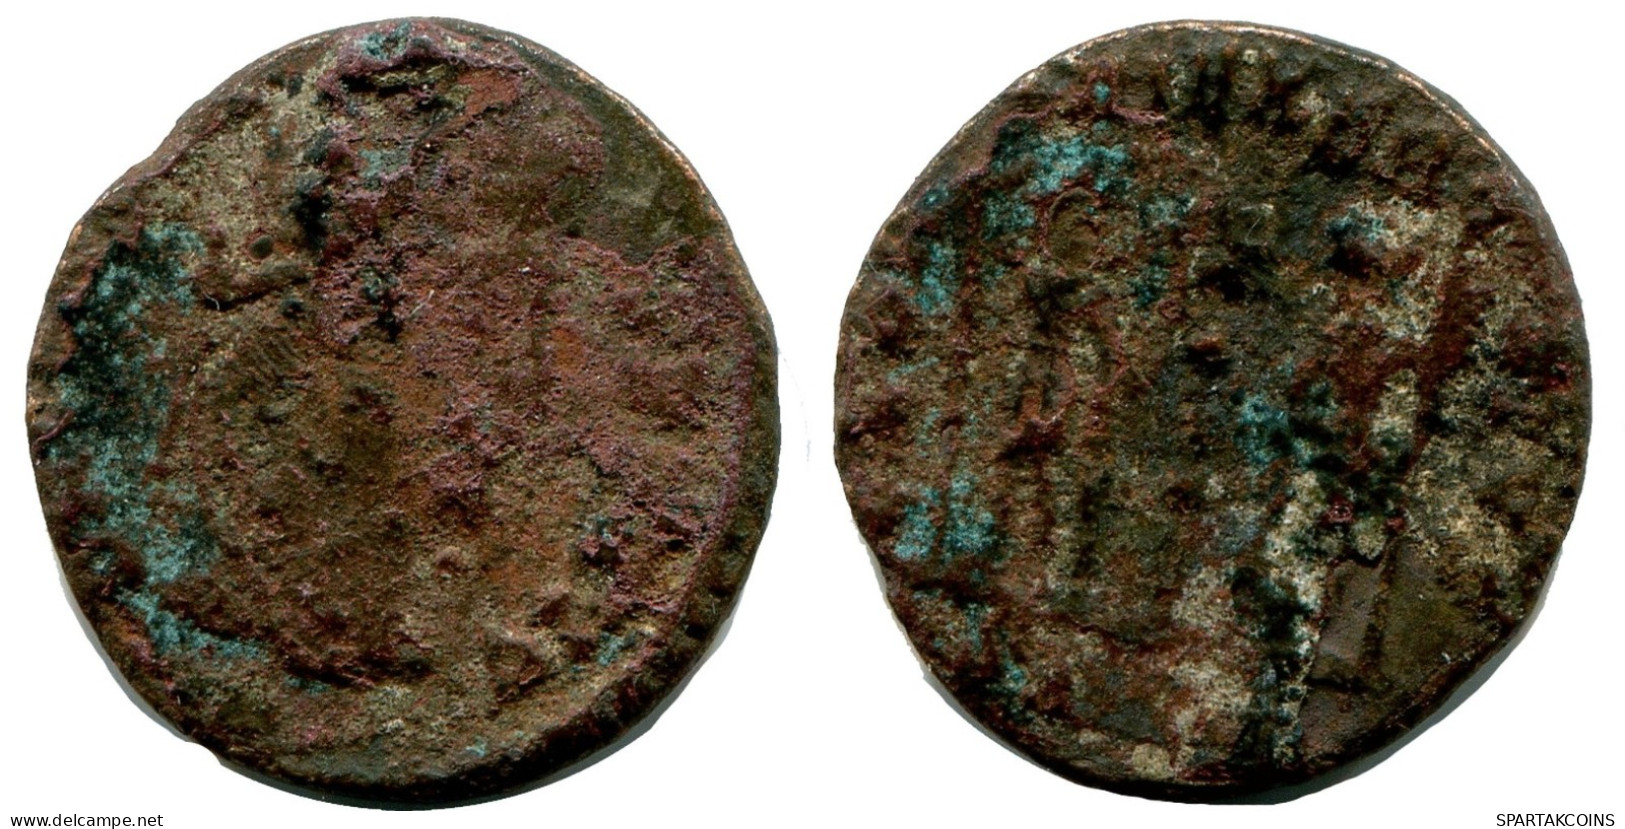 ROMAN Moneda MINTED IN ALEKSANDRIA FOUND IN IHNASYAH HOARD EGYPT #ANC10166.14.E.A - El Impero Christiano (307 / 363)